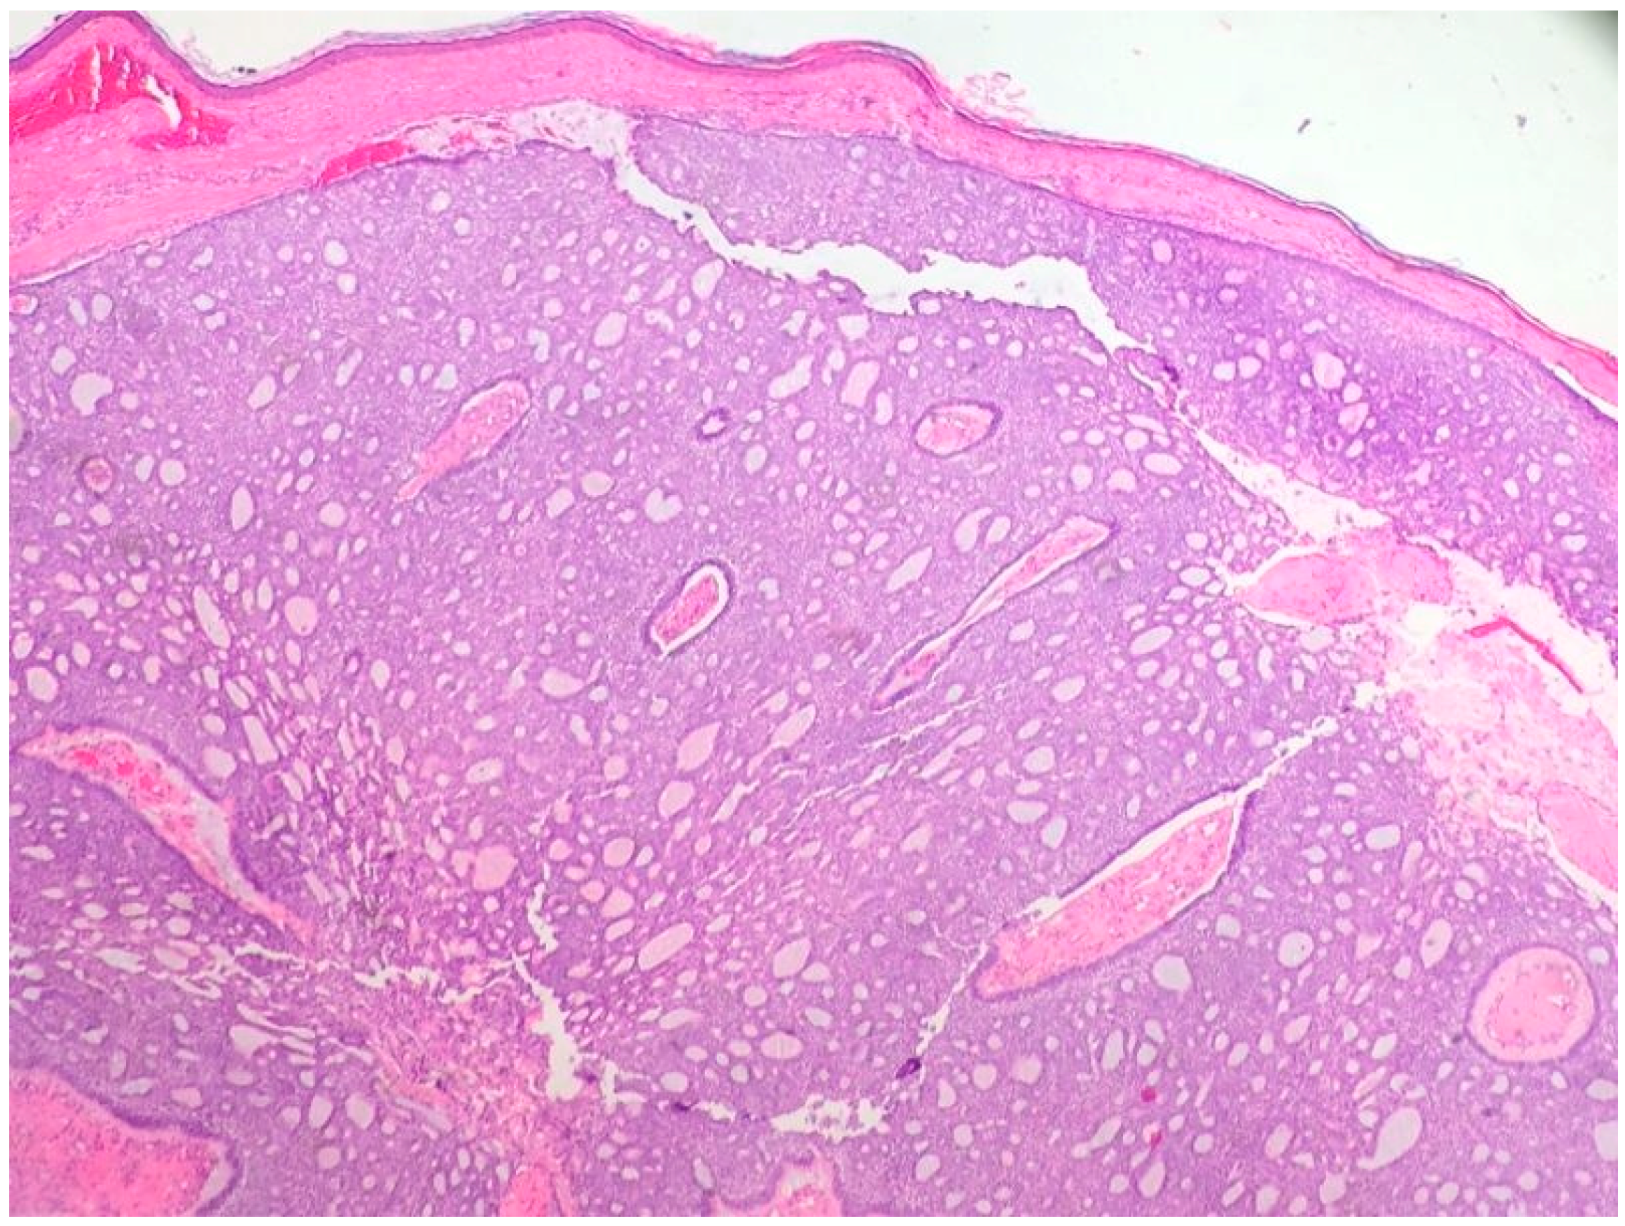 merkel cell carcinoma histology